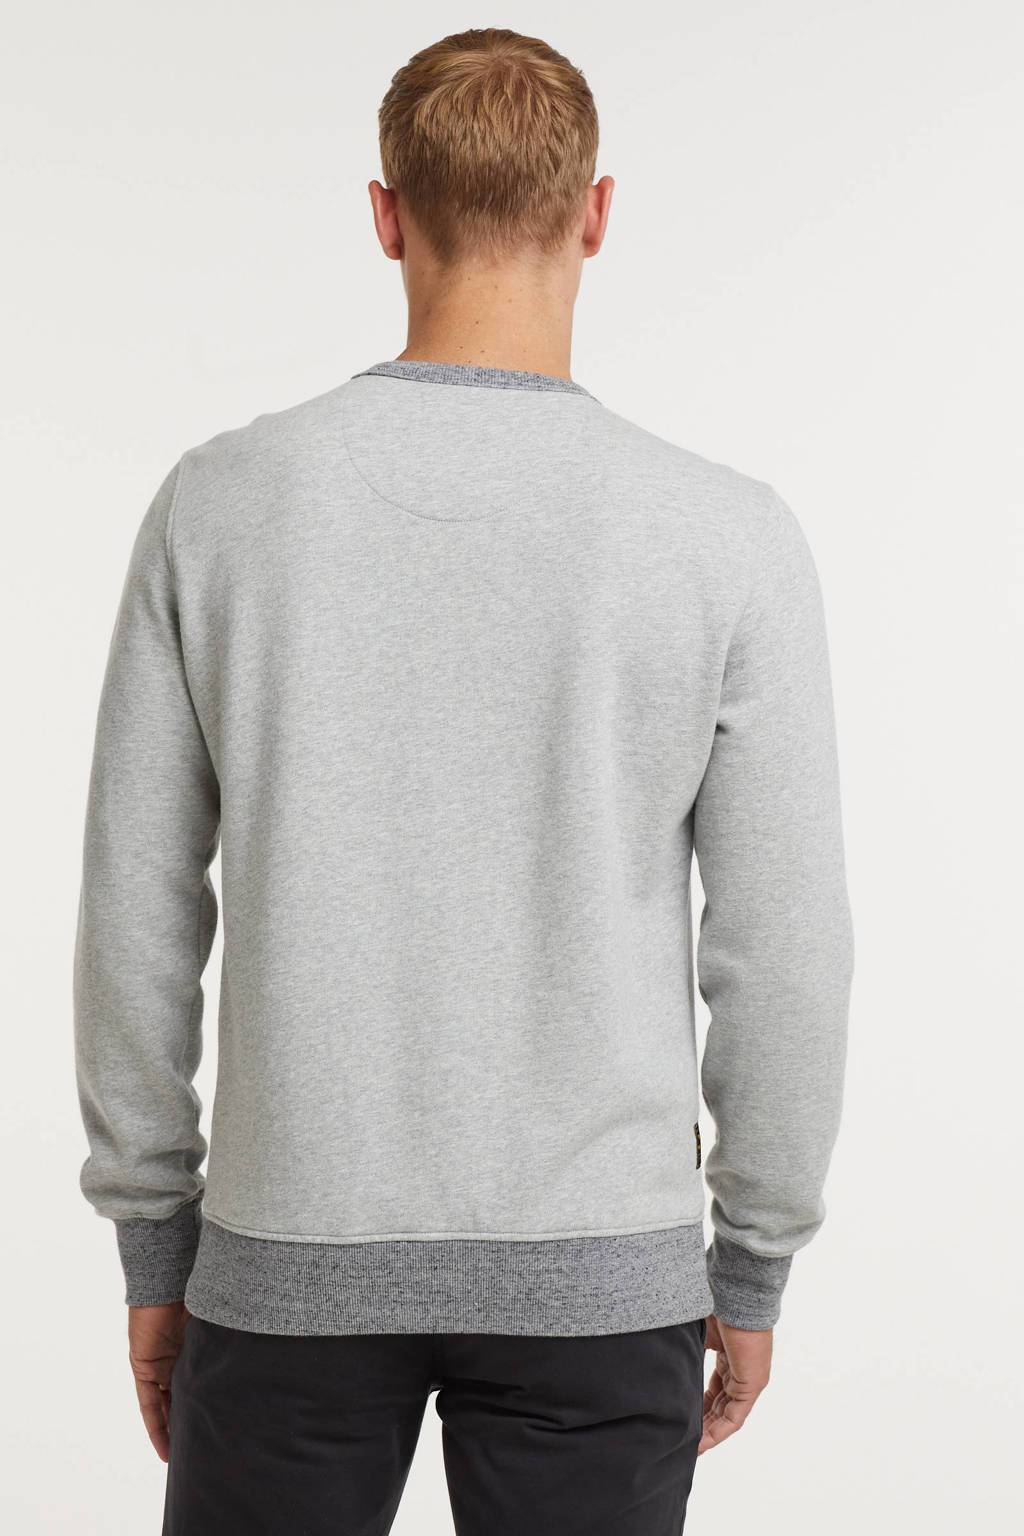 Natte sneeuw Vergevingsgezind defect PME Legend sweater grijs | wehkamp